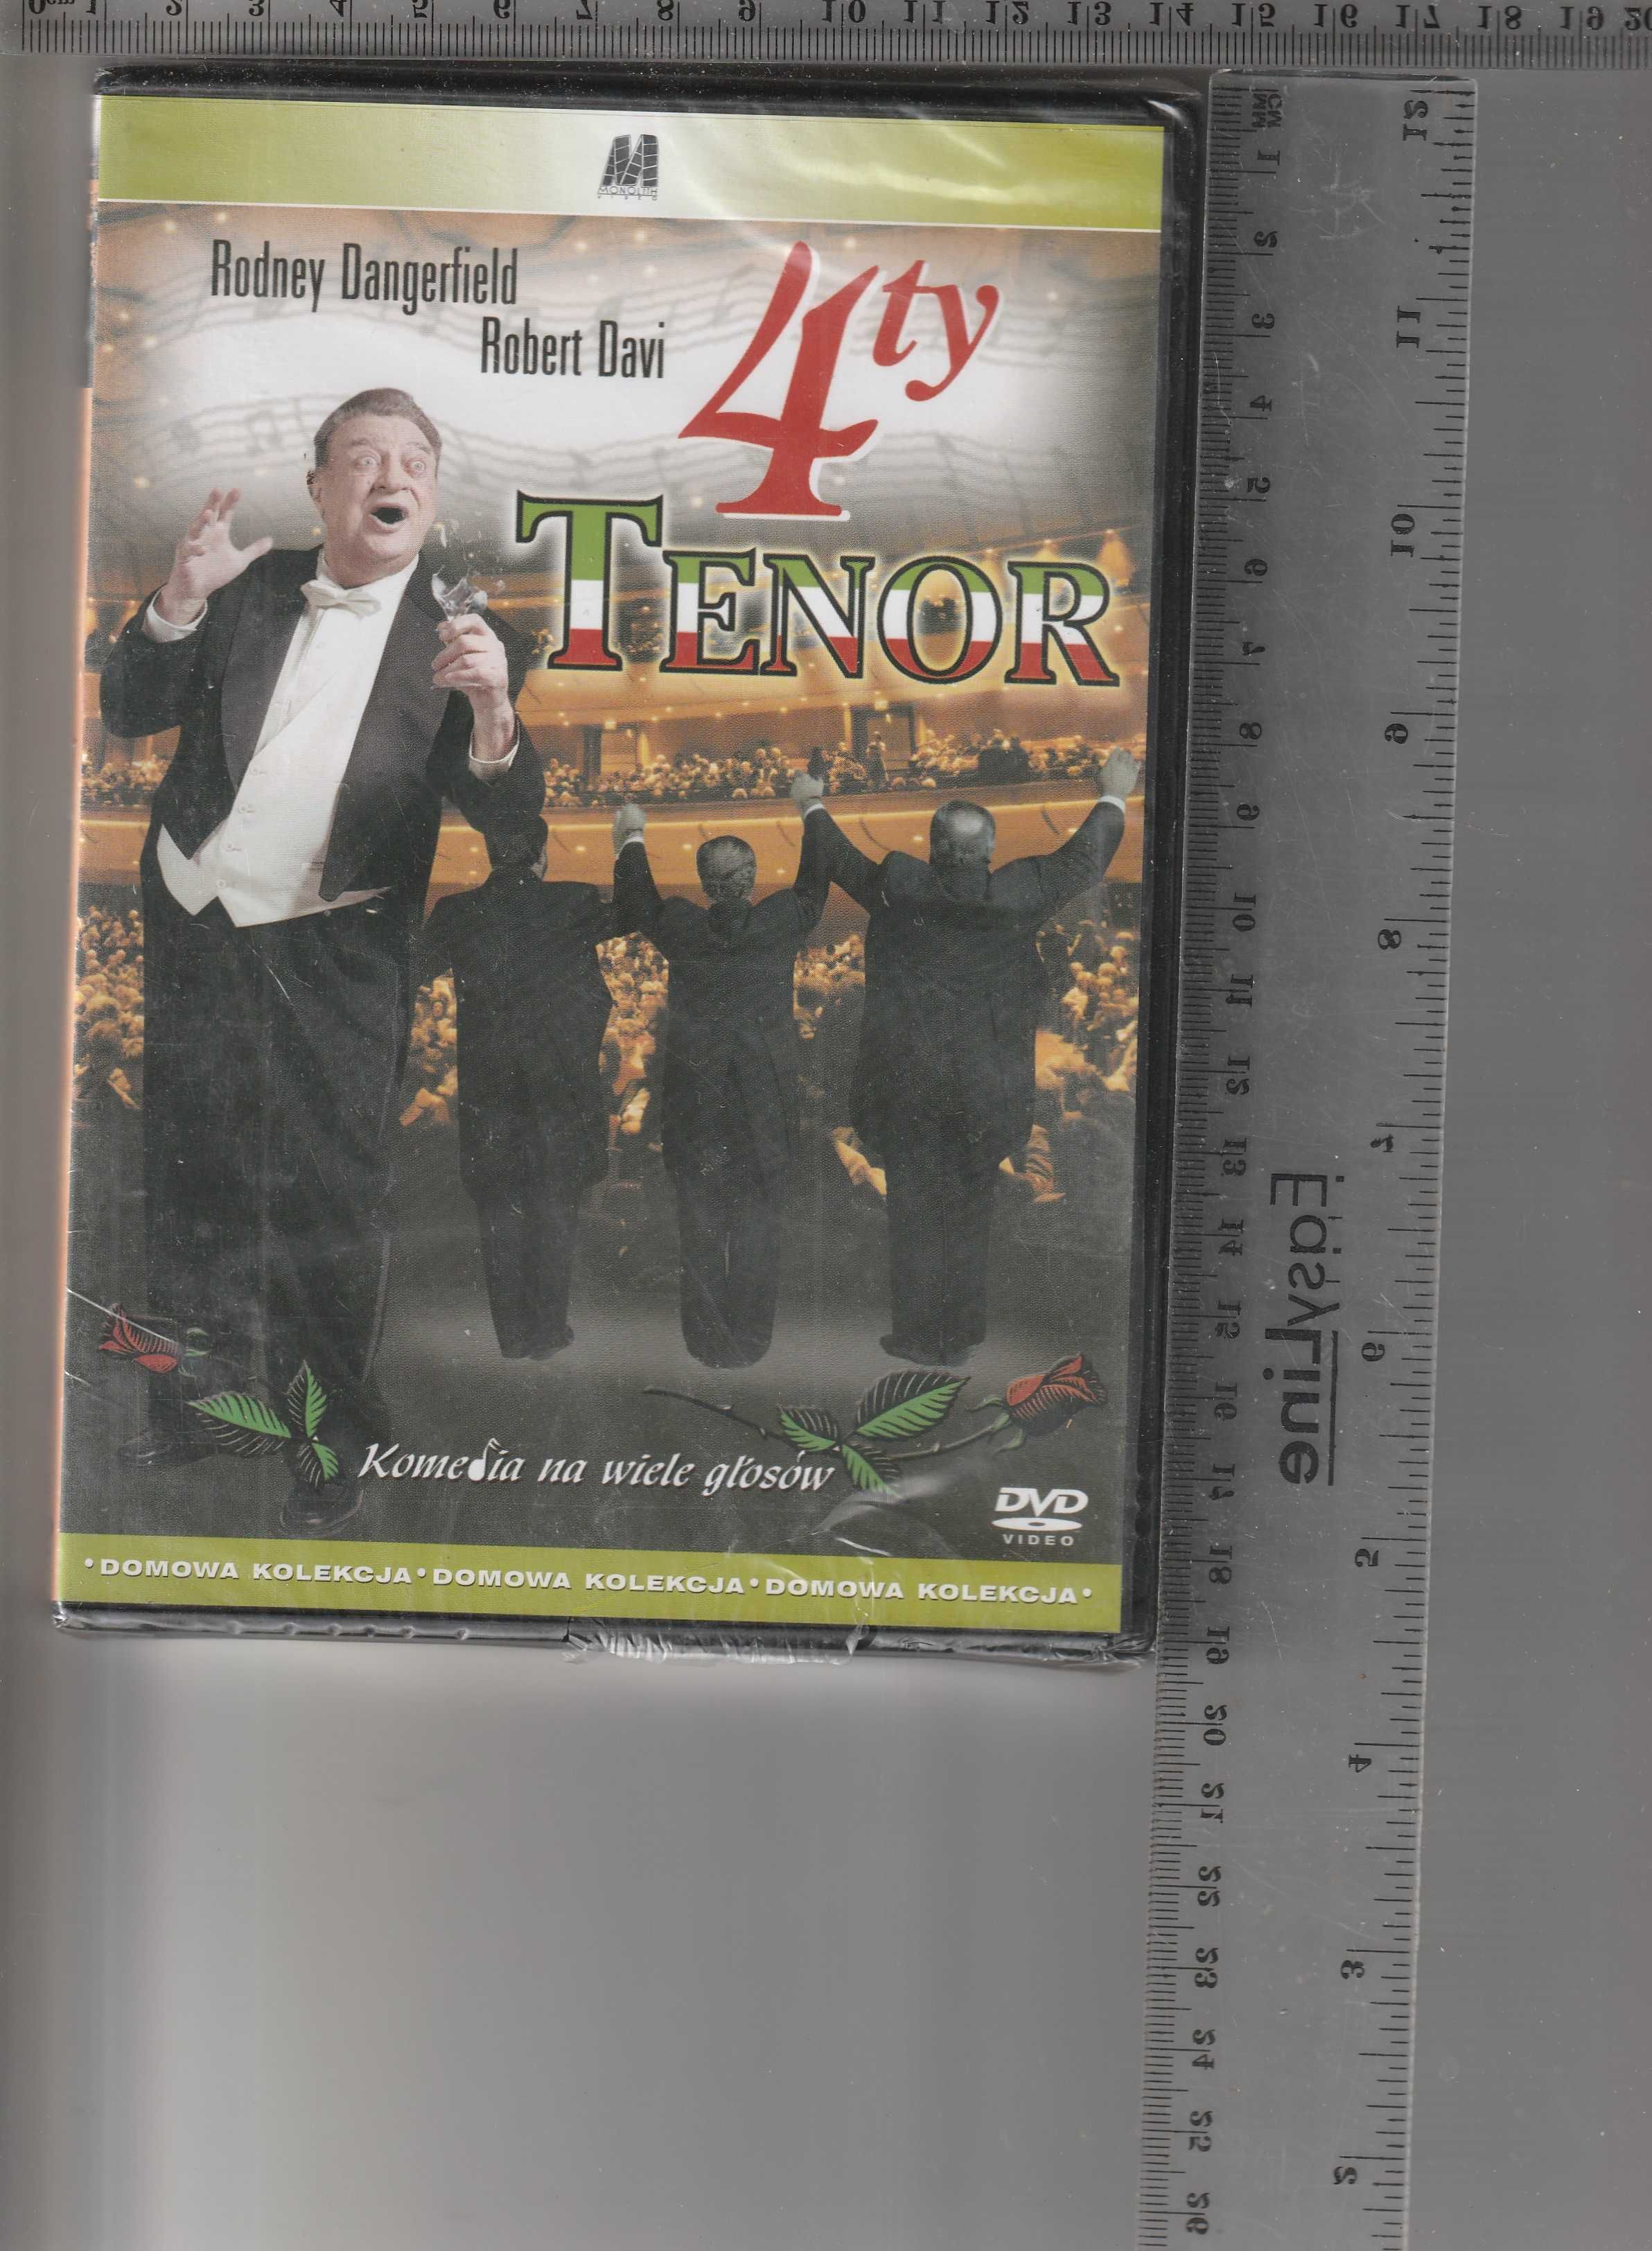 4ty Tenor Robert Davi DVD